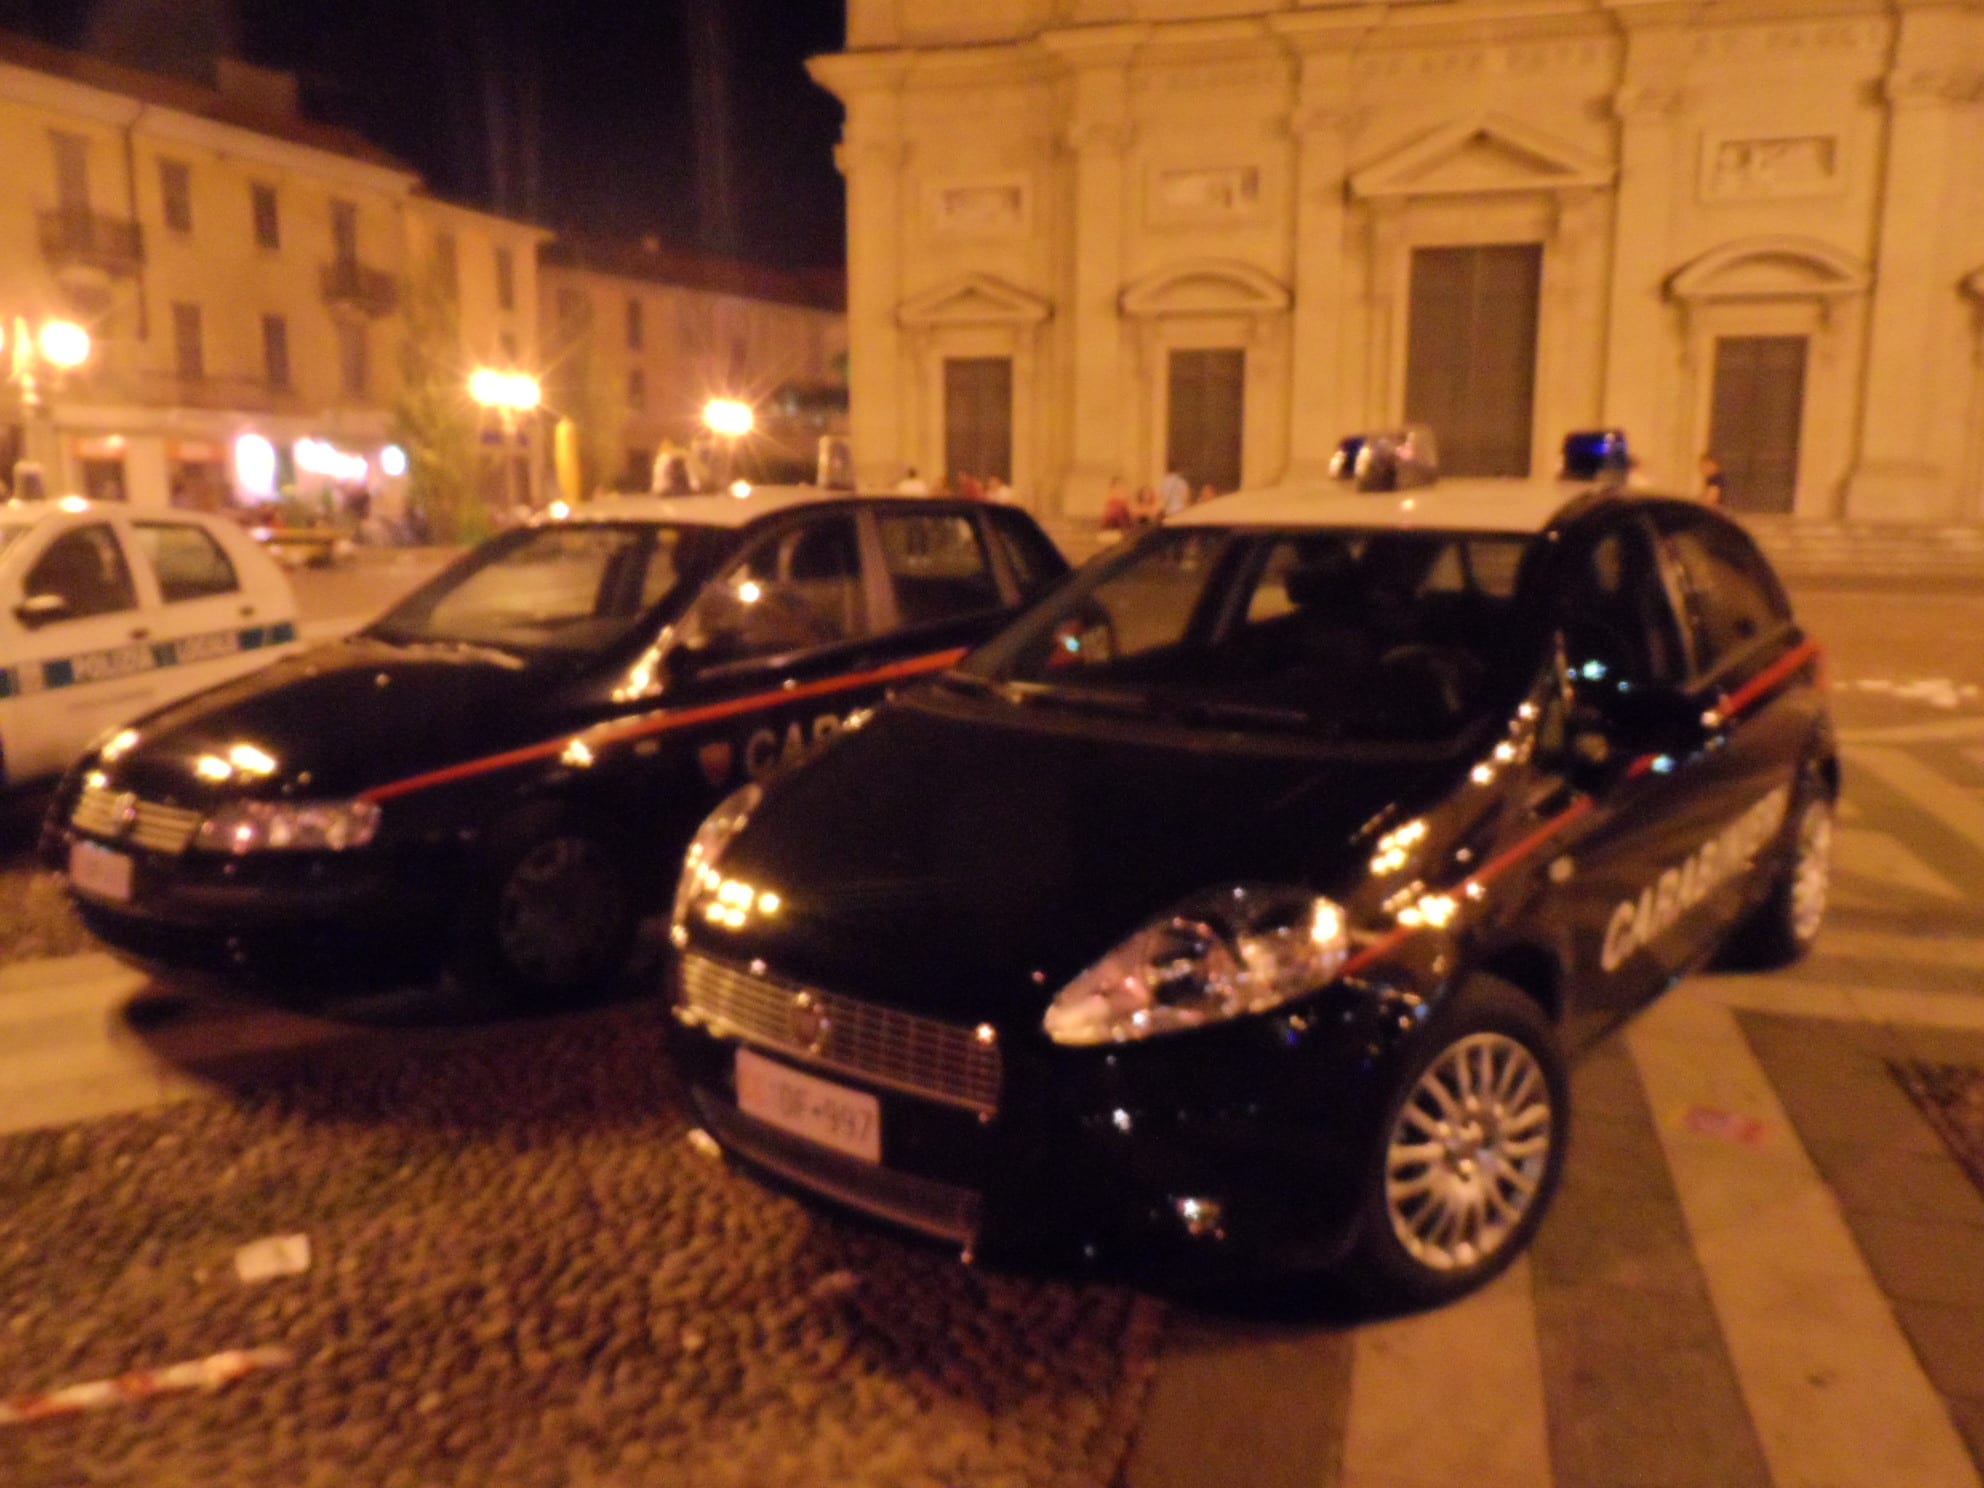 Qualche bicchiere di troppo e futili motivi: le cause della maxi lite in piazza Libertà sedata dai carabinieri